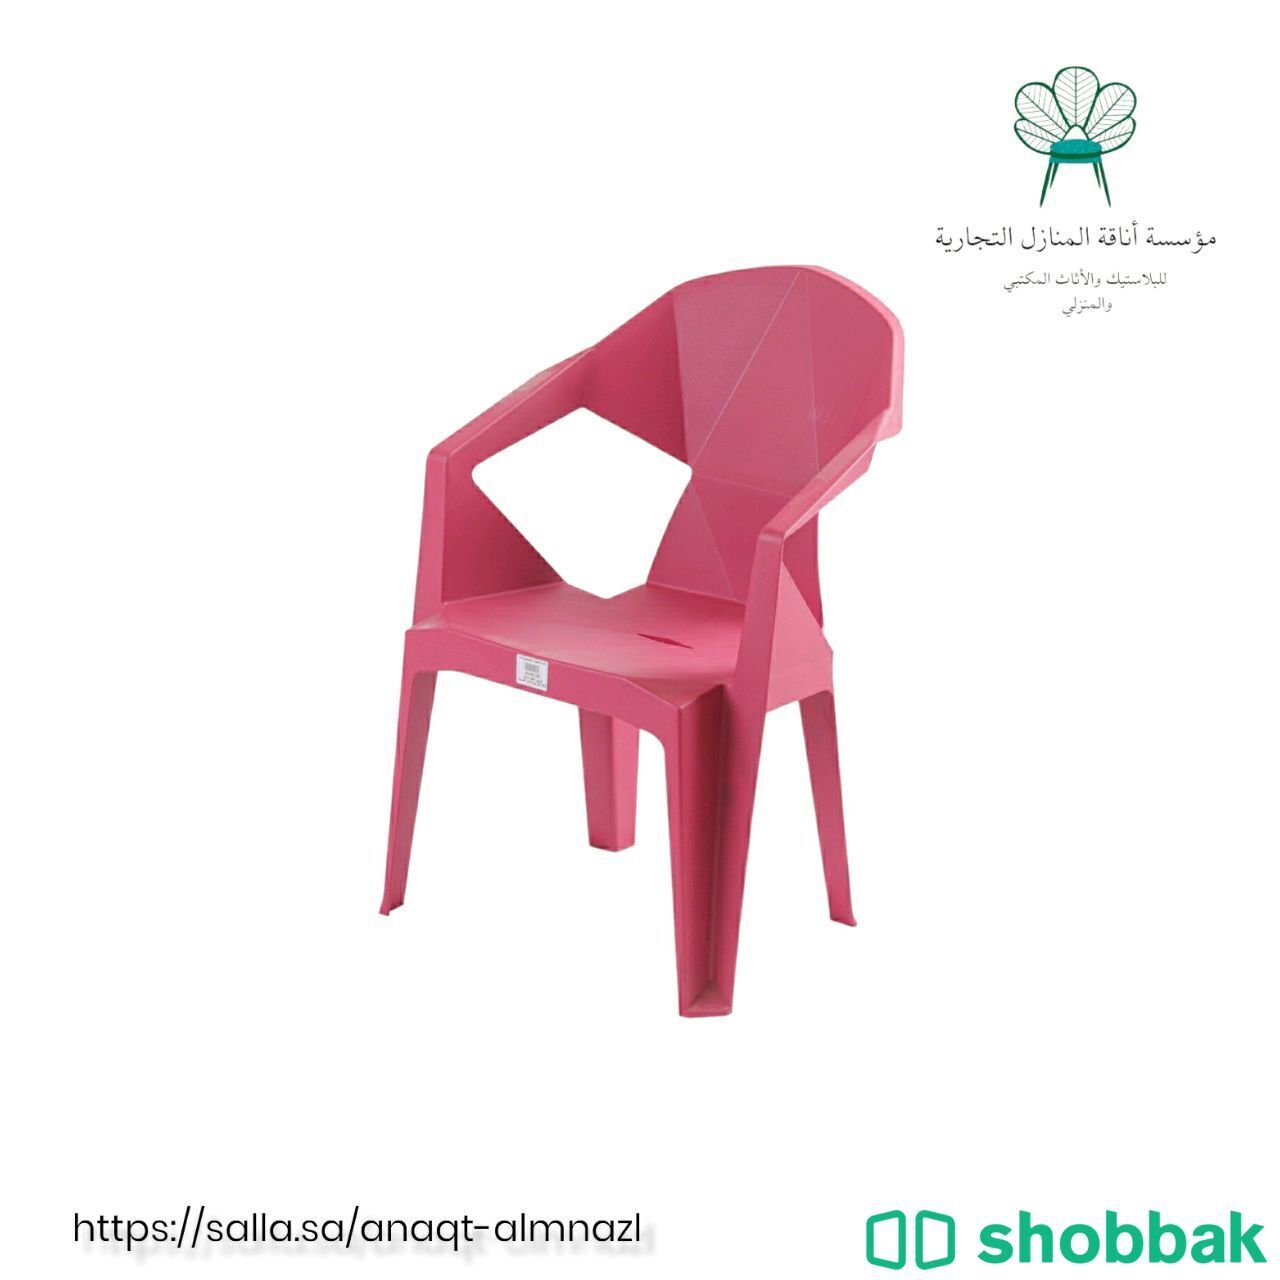 كرسي أطفال فرفور: الراحة والأمان في تصميم مبتكر يحفز خيال الأطفال"



 Shobbak Saudi Arabia